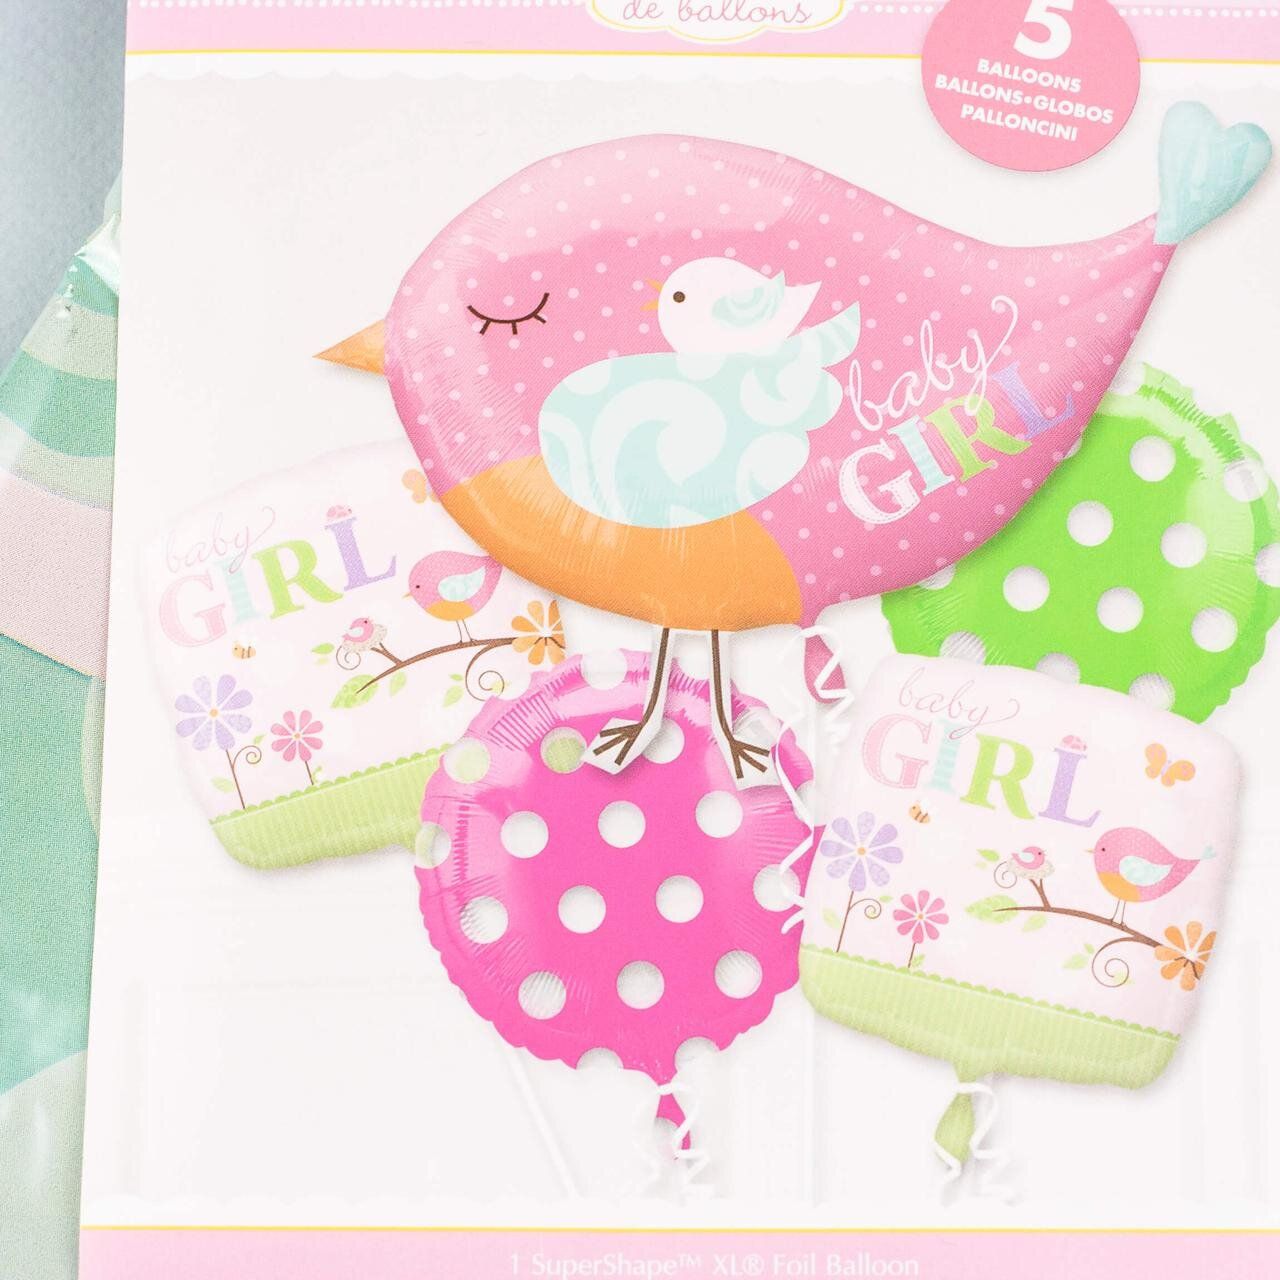 Набор воздушных/гелиевых шаров "Baby GIRL", розово-салатовый, 5 шт.